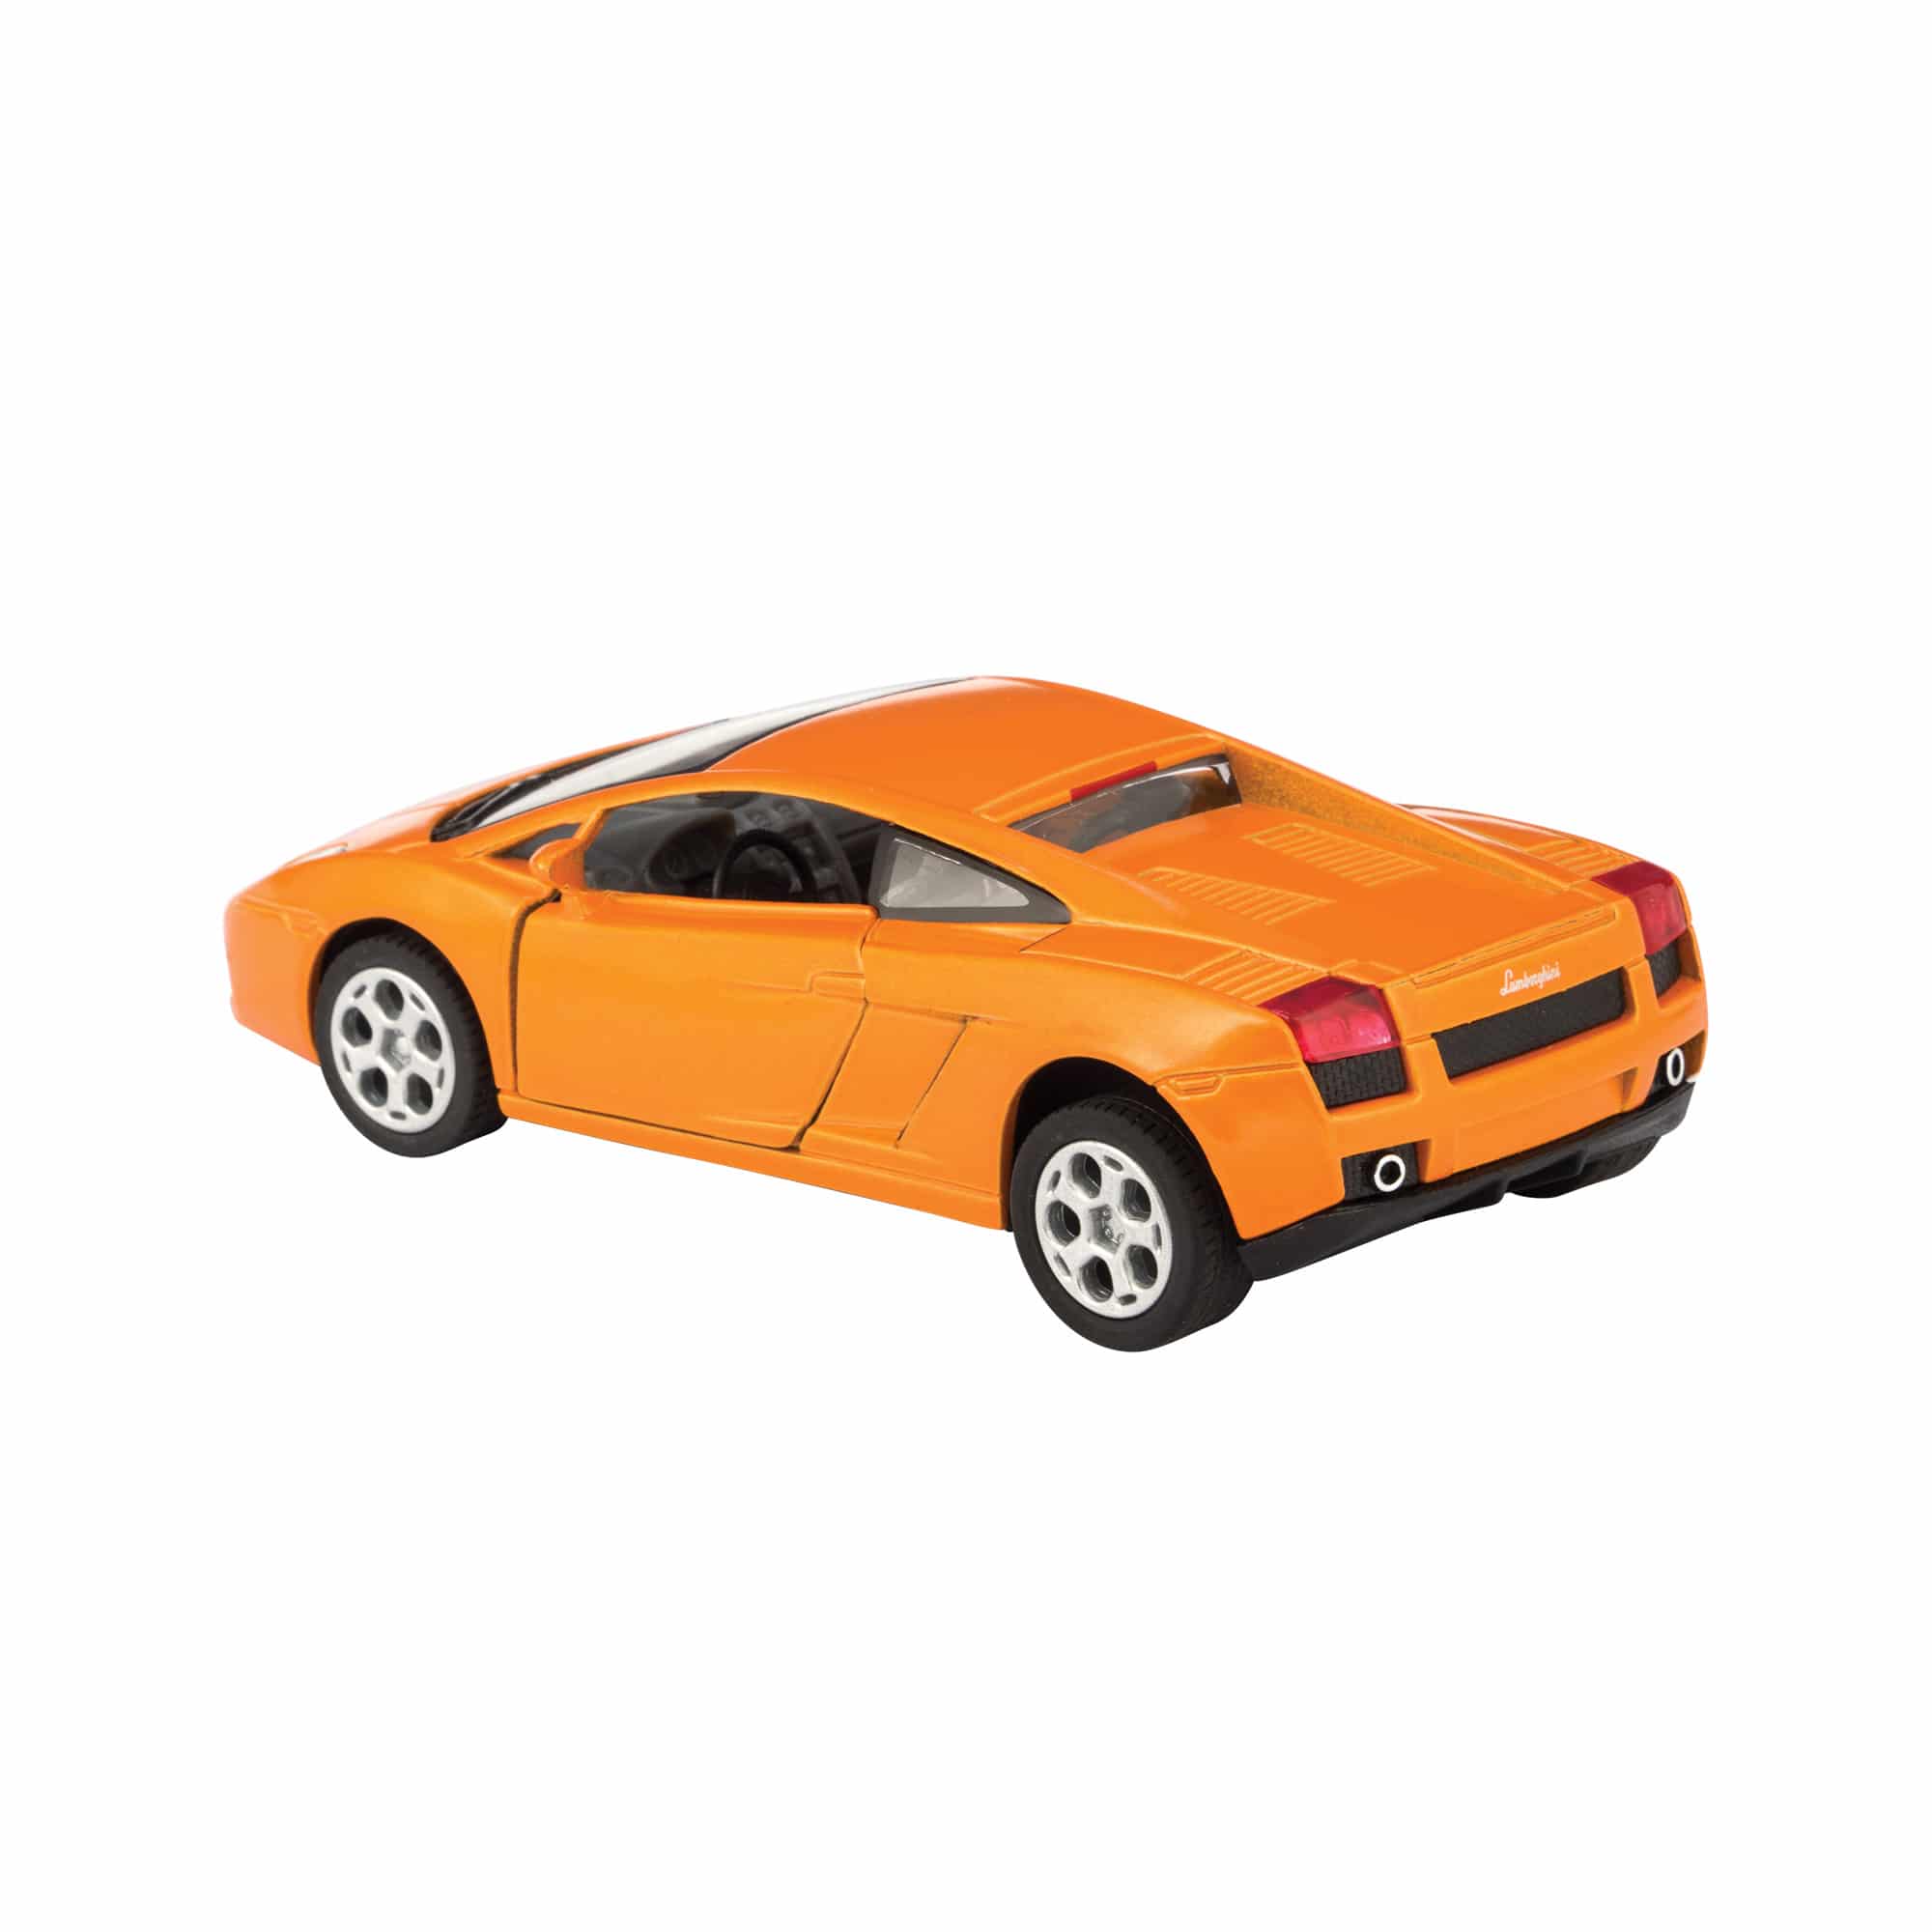 Diecast Lamborghini Gallardo - Red, Orange, Yellow, or Black    